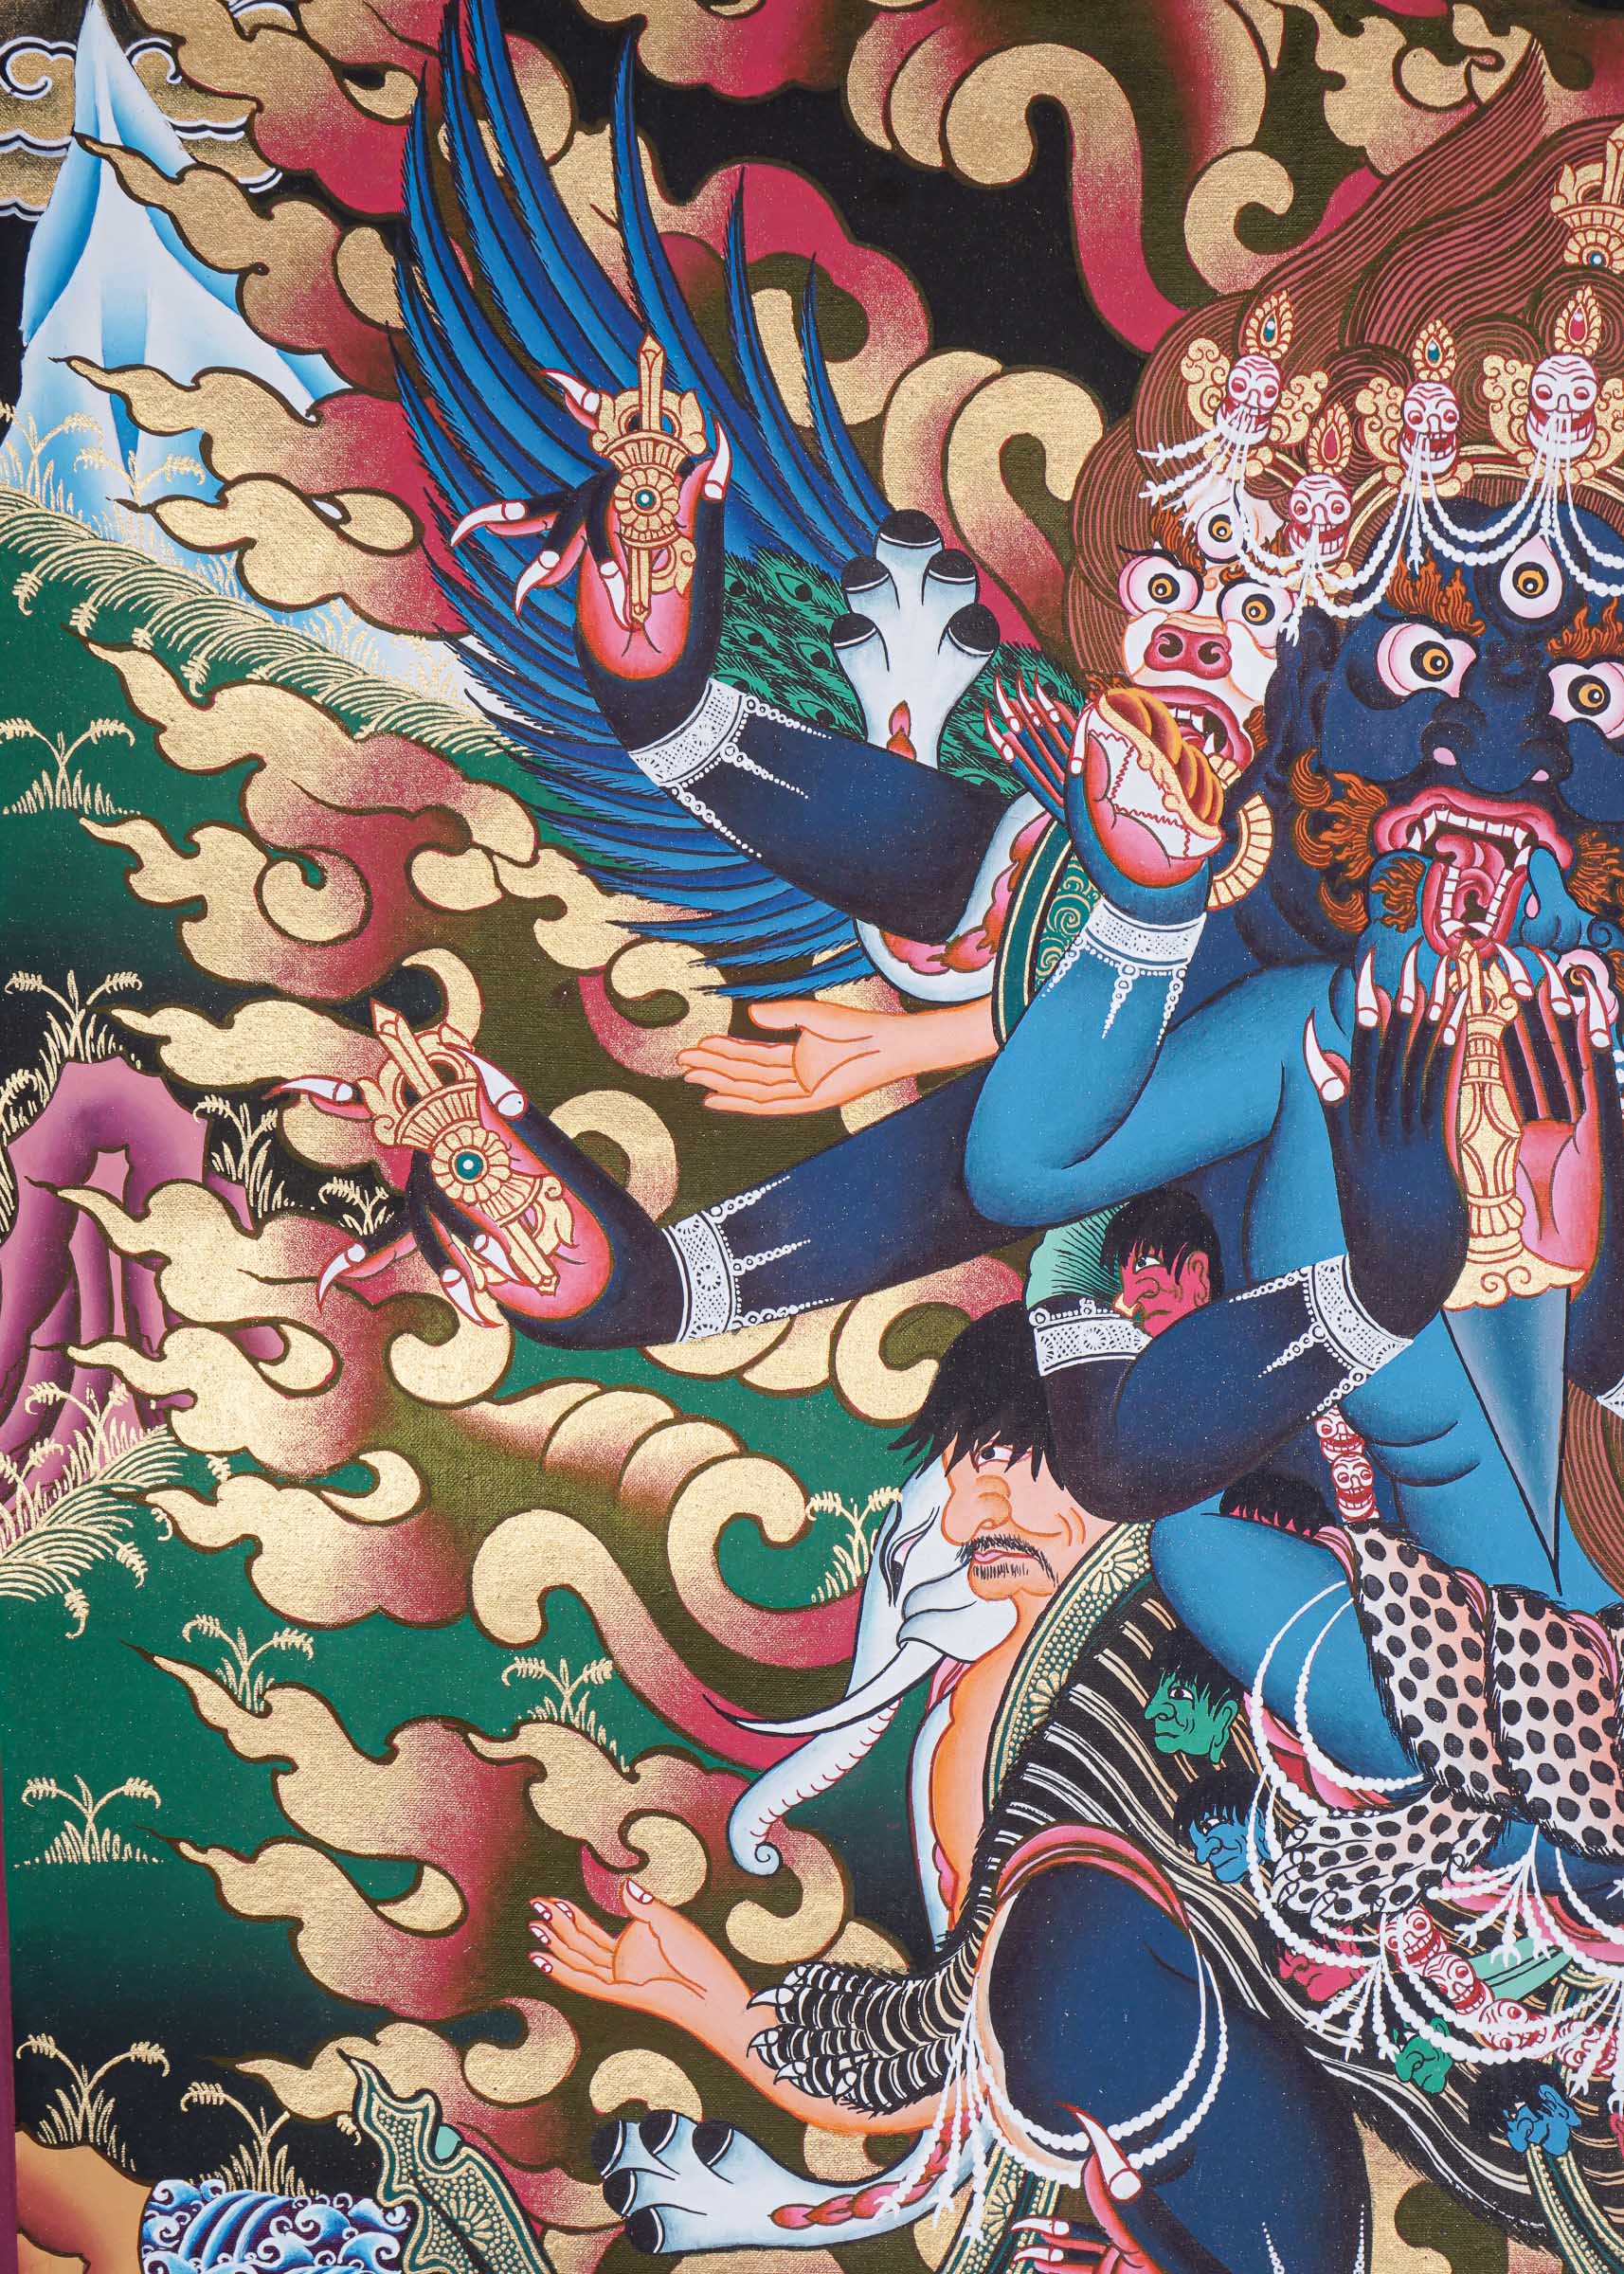 Vajrakilaya Thangka - Wrathful Deity Painting